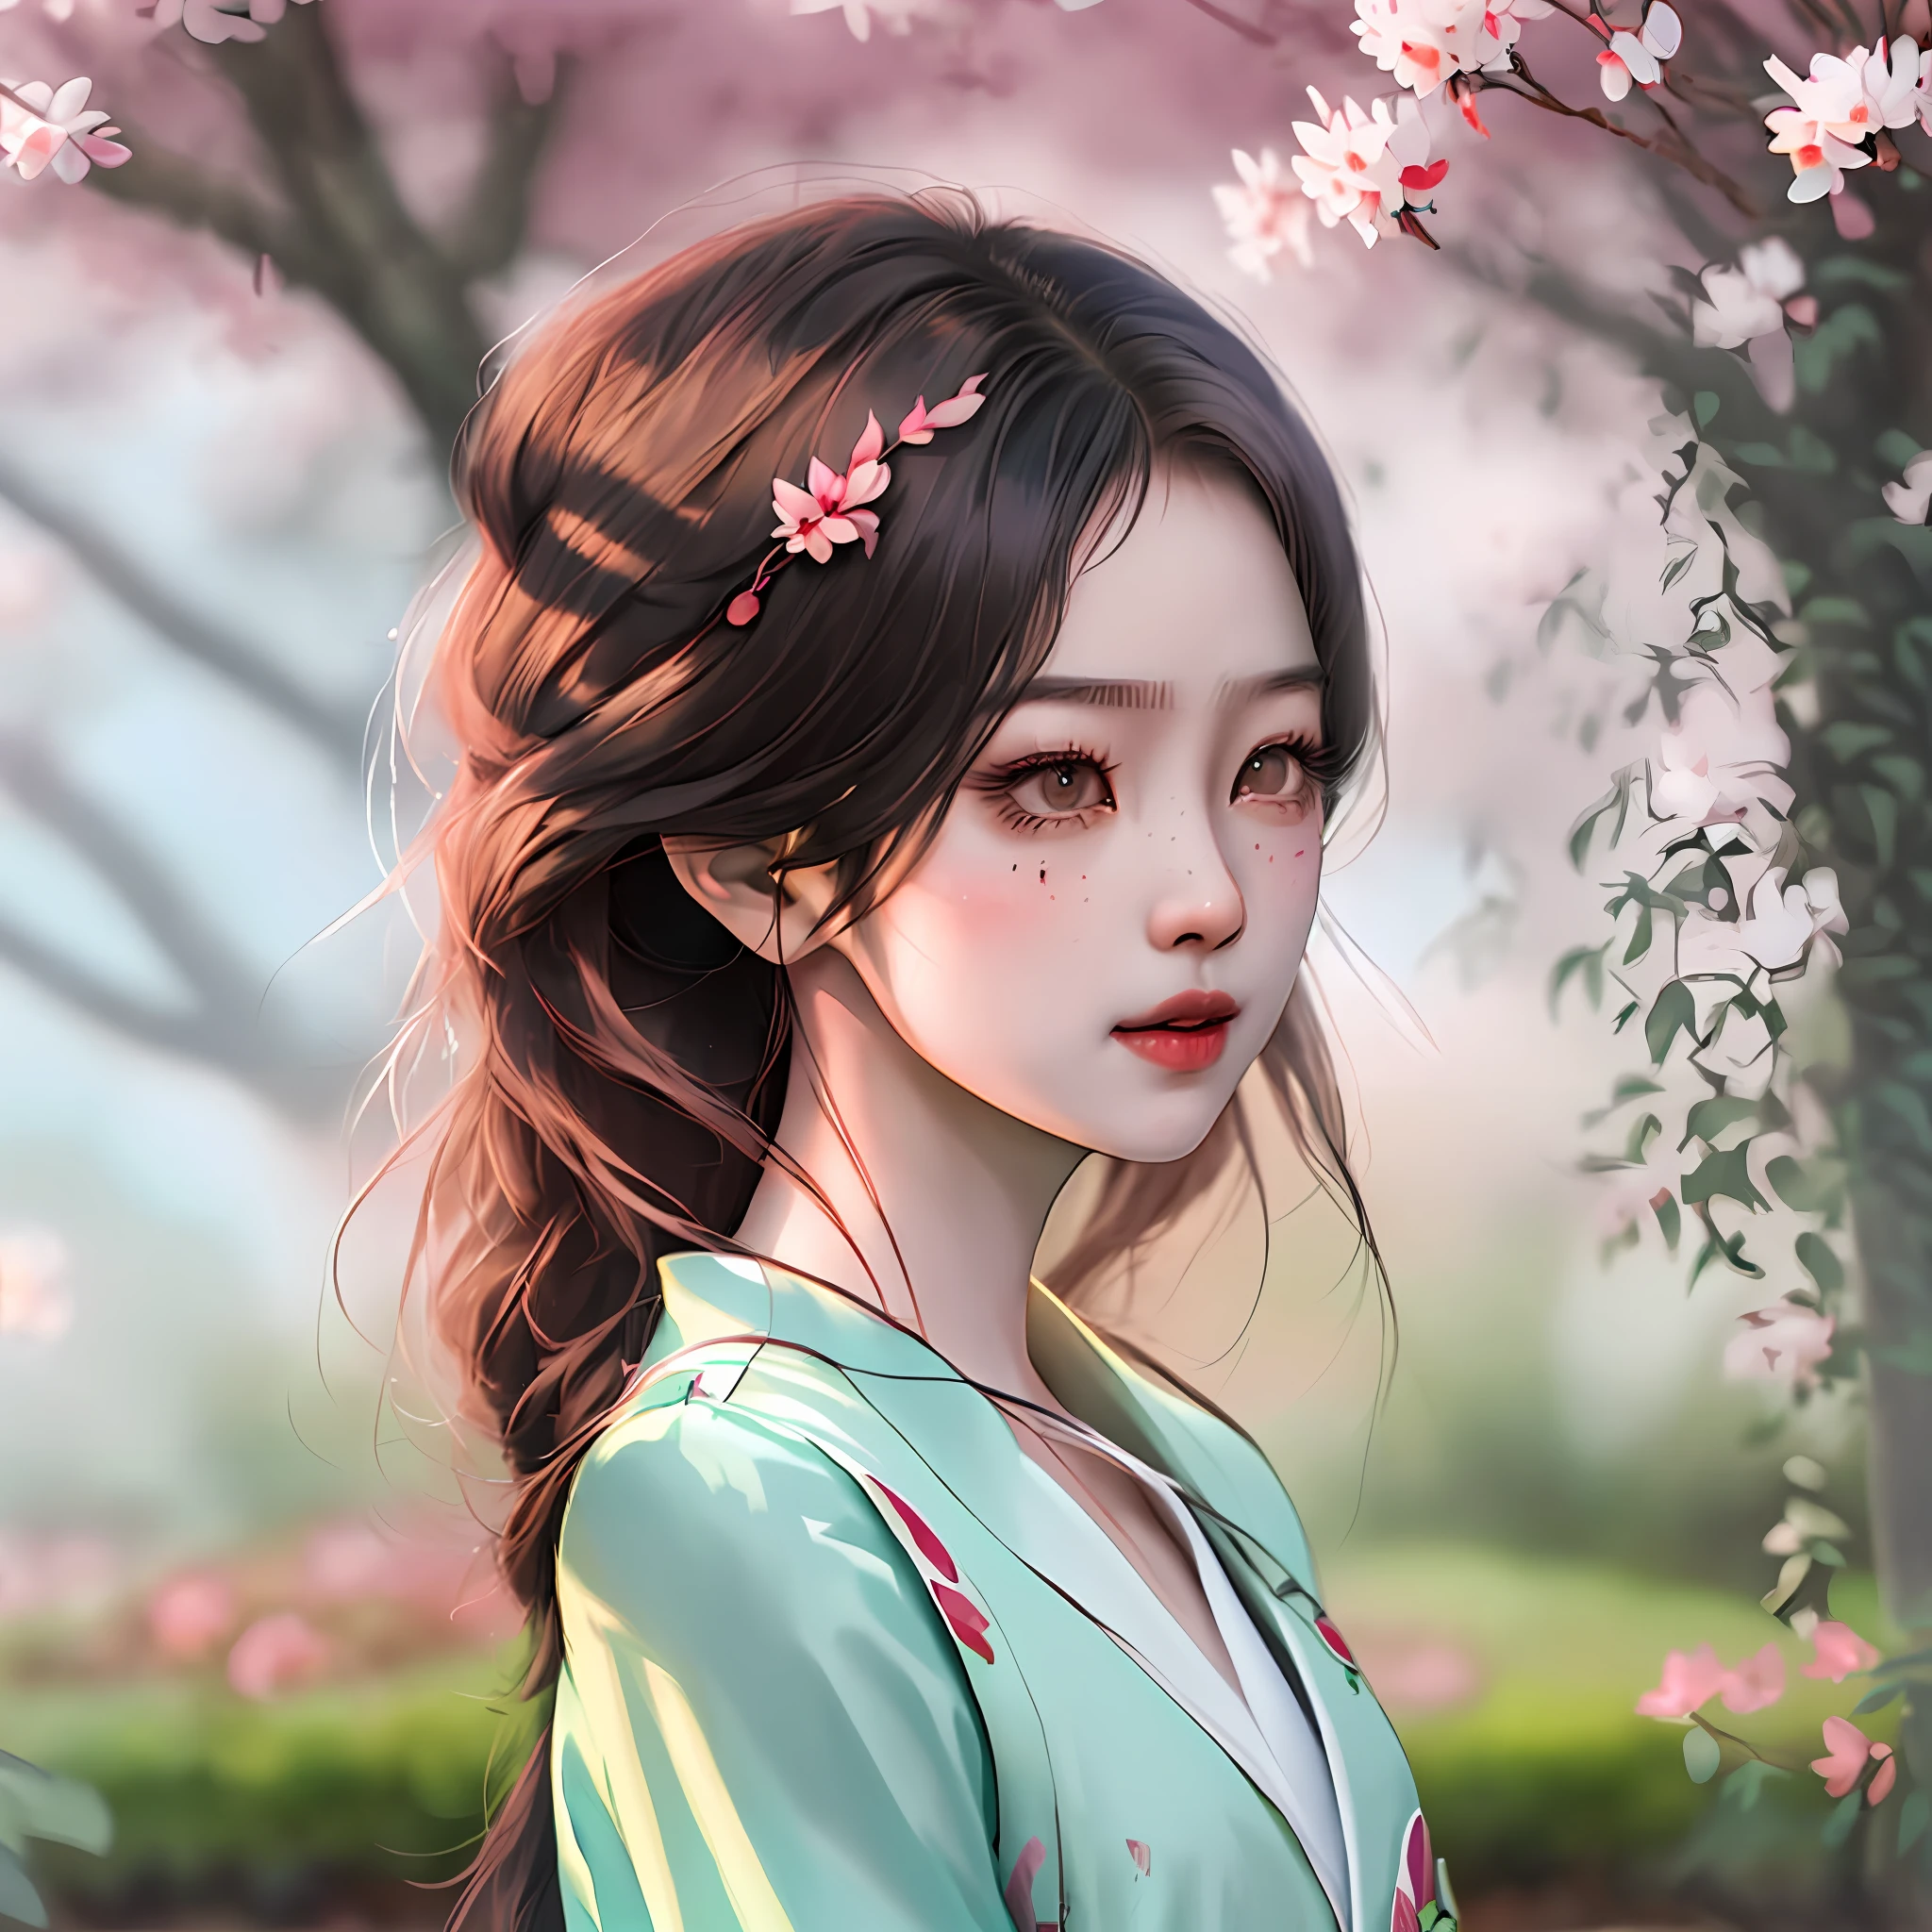 달리는 포즈를 취하는 학자 제복을 입은 놀랍도록 아름다운 아시아 소녀의 미드샷, 벚나무가 있는 정원, Loish와 Chris Sanders의 매우 상세한 일러스트레이션, 체적 조명, 부드러운 테트라드 색상, 최고의 품질, 고화질, 날카로운 초점